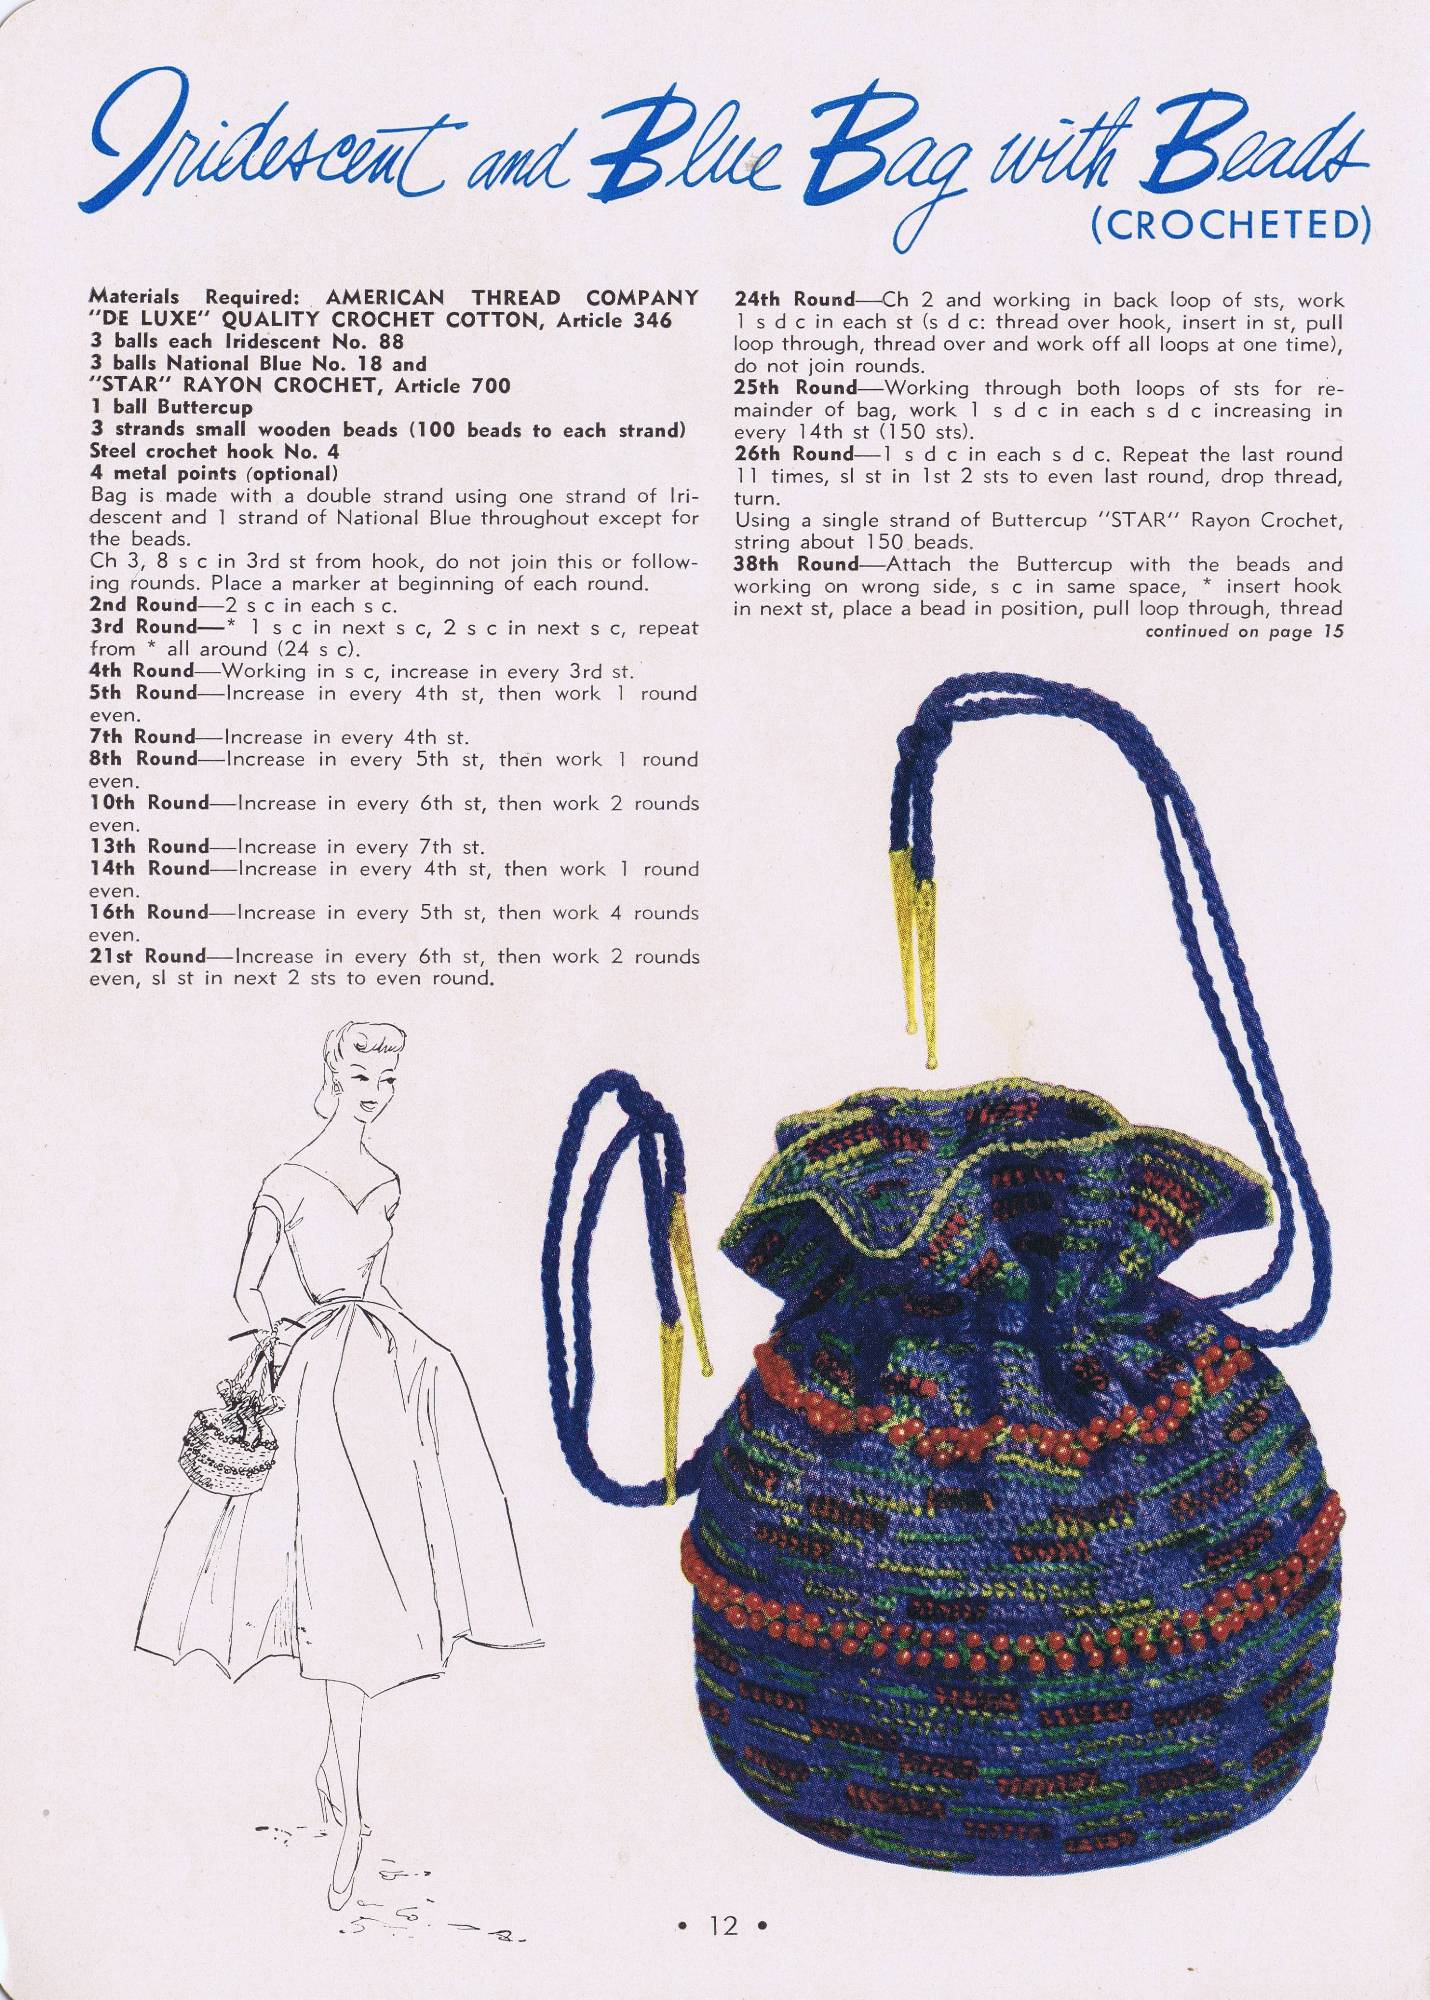 Crochet Calot Envelope Purse Pattern is Vintage 1950